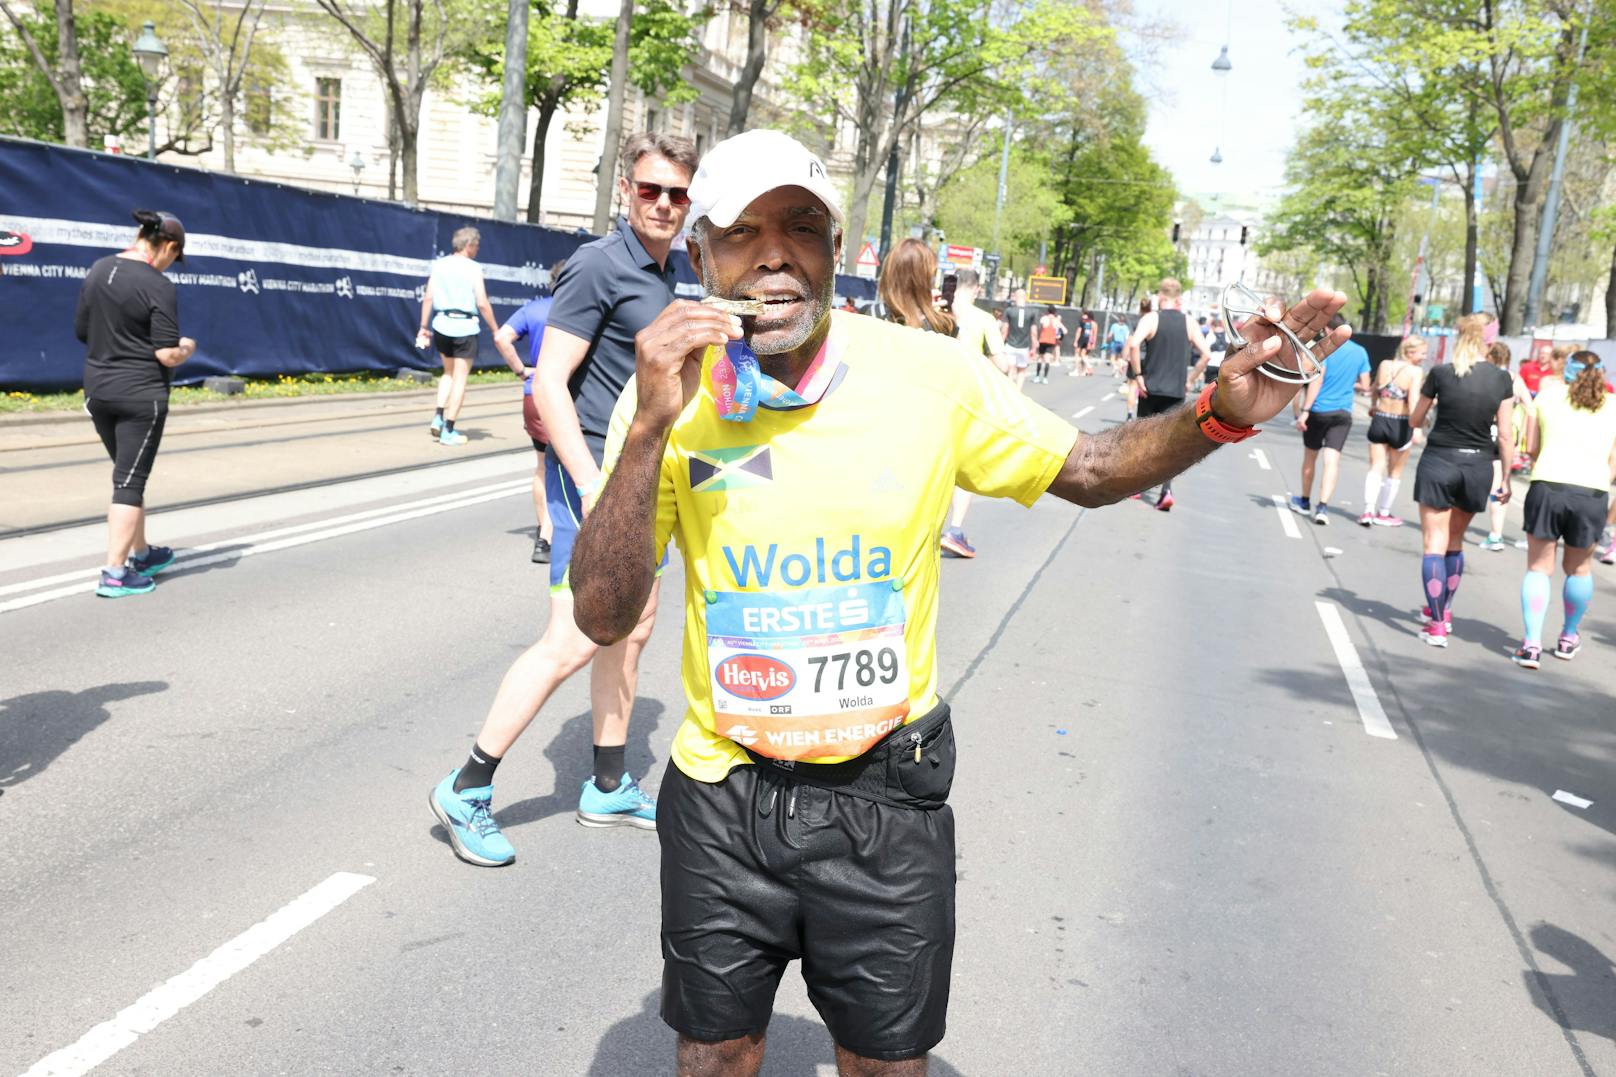 Wolda Grant reiste aus Jamaika an: "Das war schon mein siebenter Marathon in Wien."